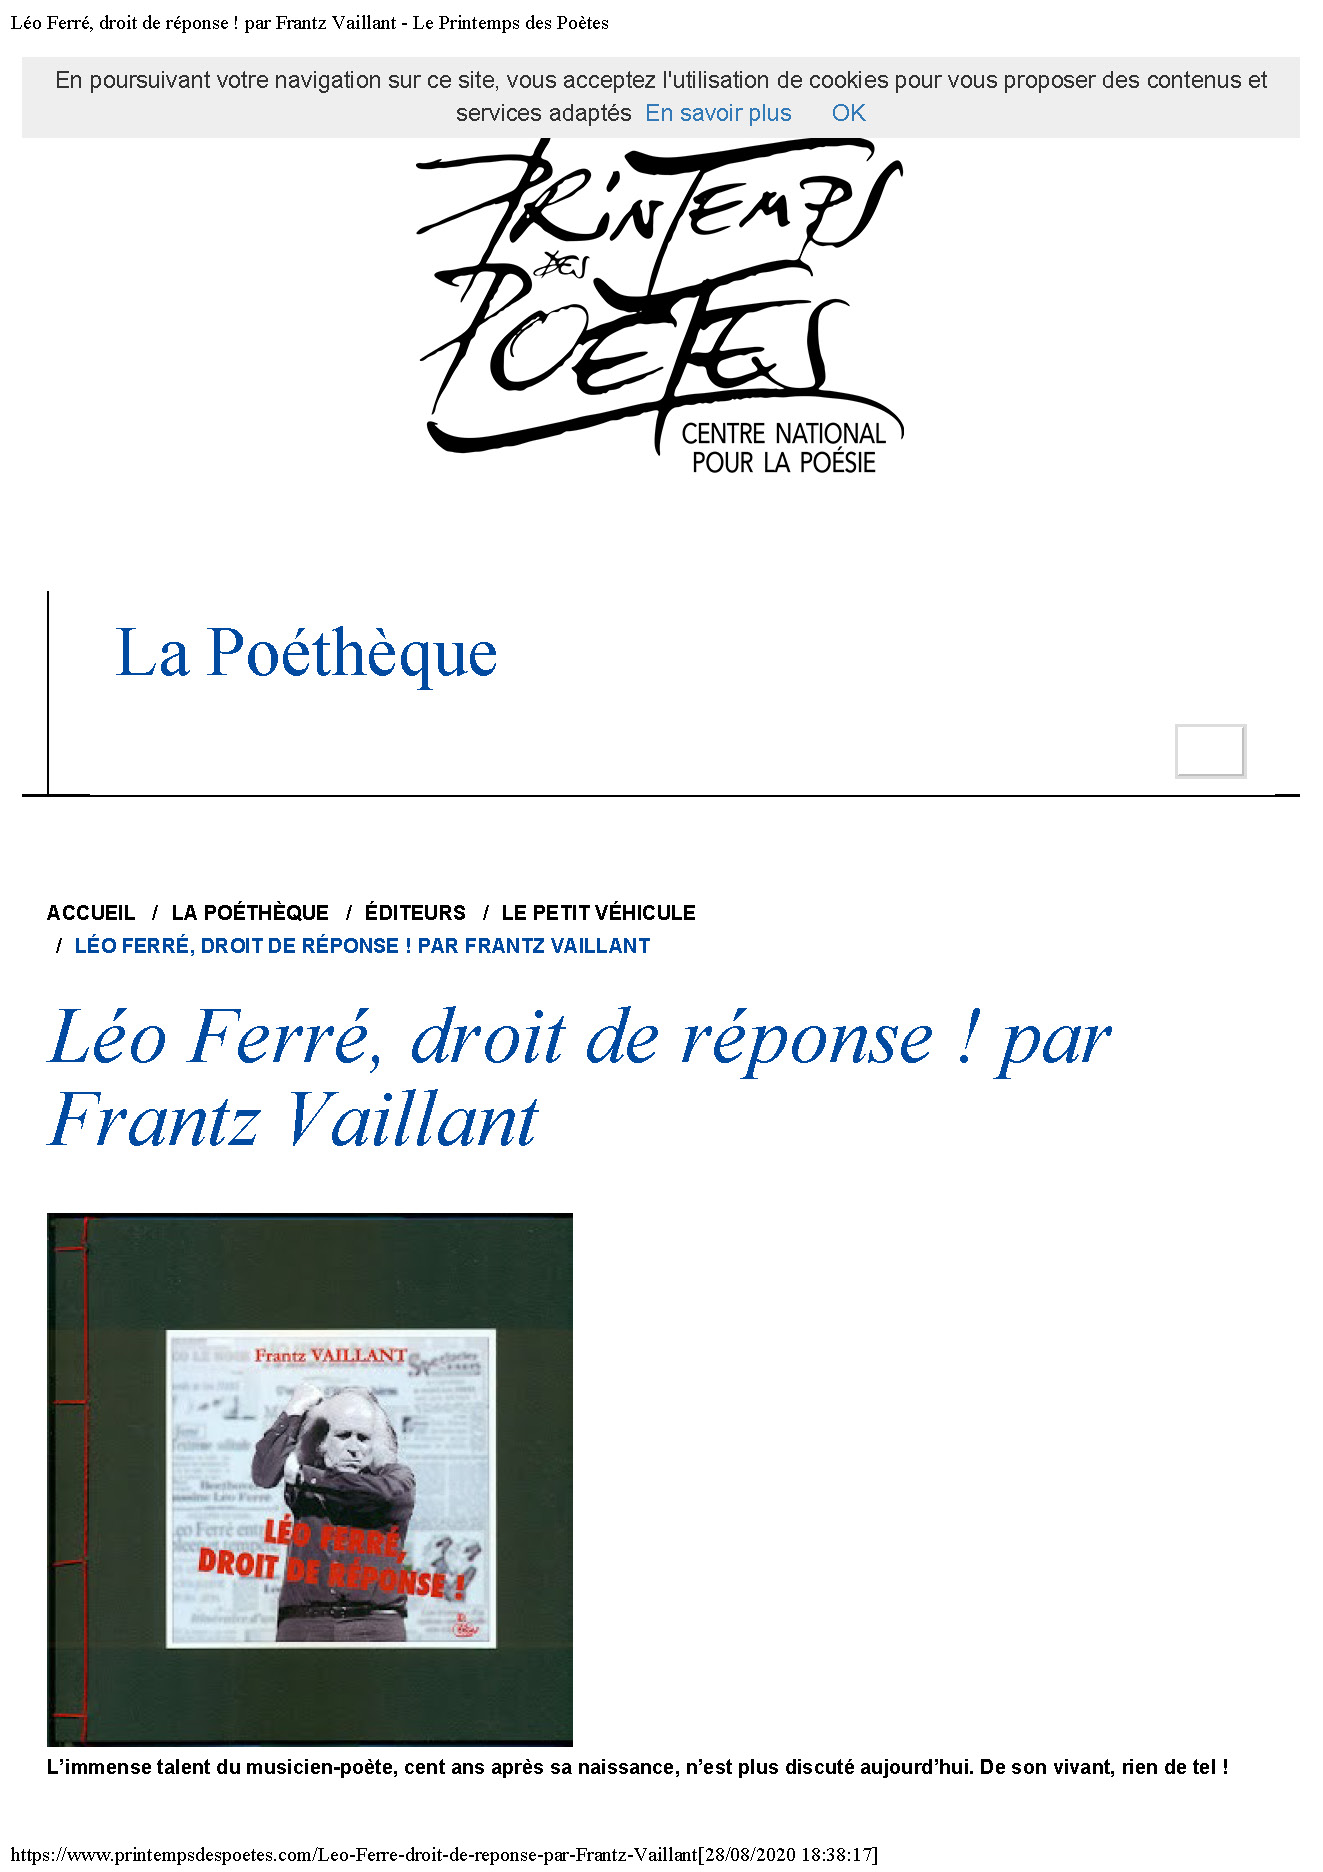 01/10/2016 Le-Printemps-des-Poetes Léo Ferré droit de réponse par Frantz Vaillant